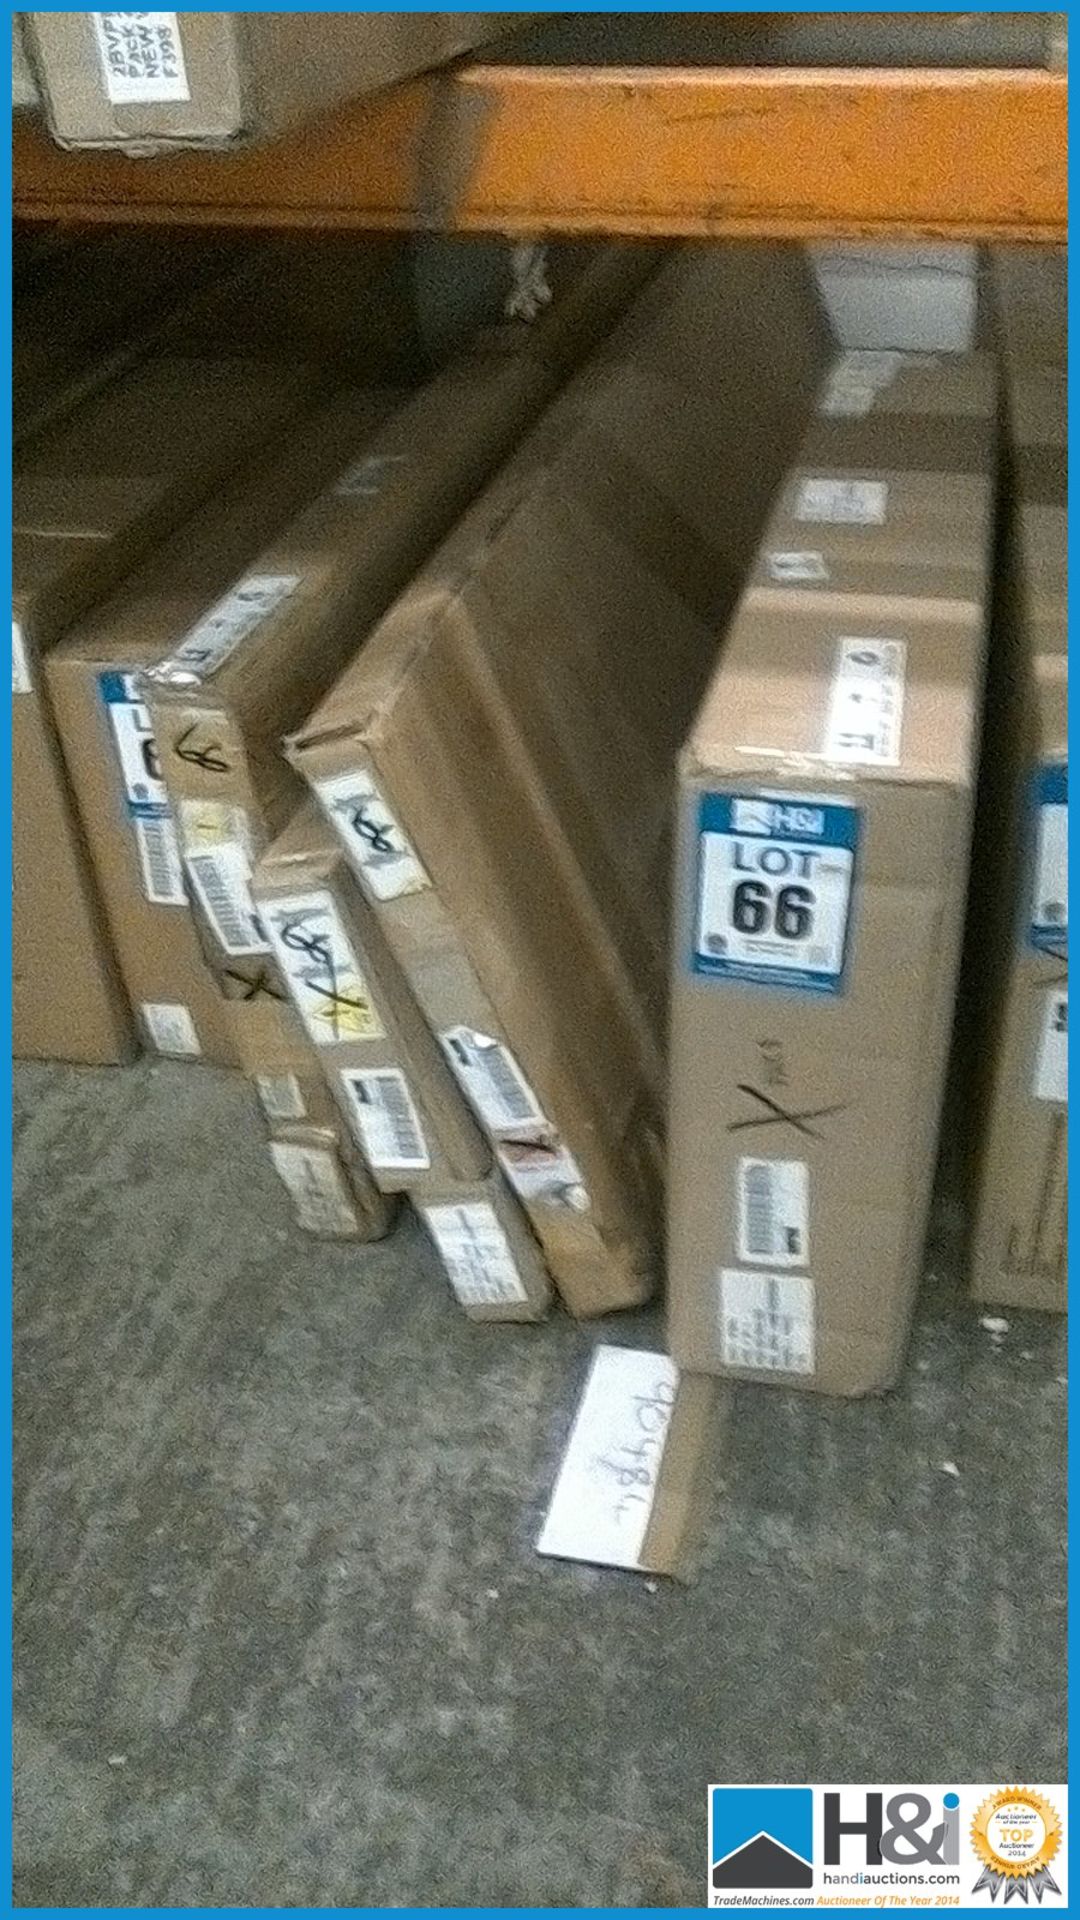 NEW IN BOX PERU 4DOOR 4DRAWER WARDROBE [OAK] 182 x 200 x 52cm RRP £493 Appraisal: New, unused in - Image 2 of 2